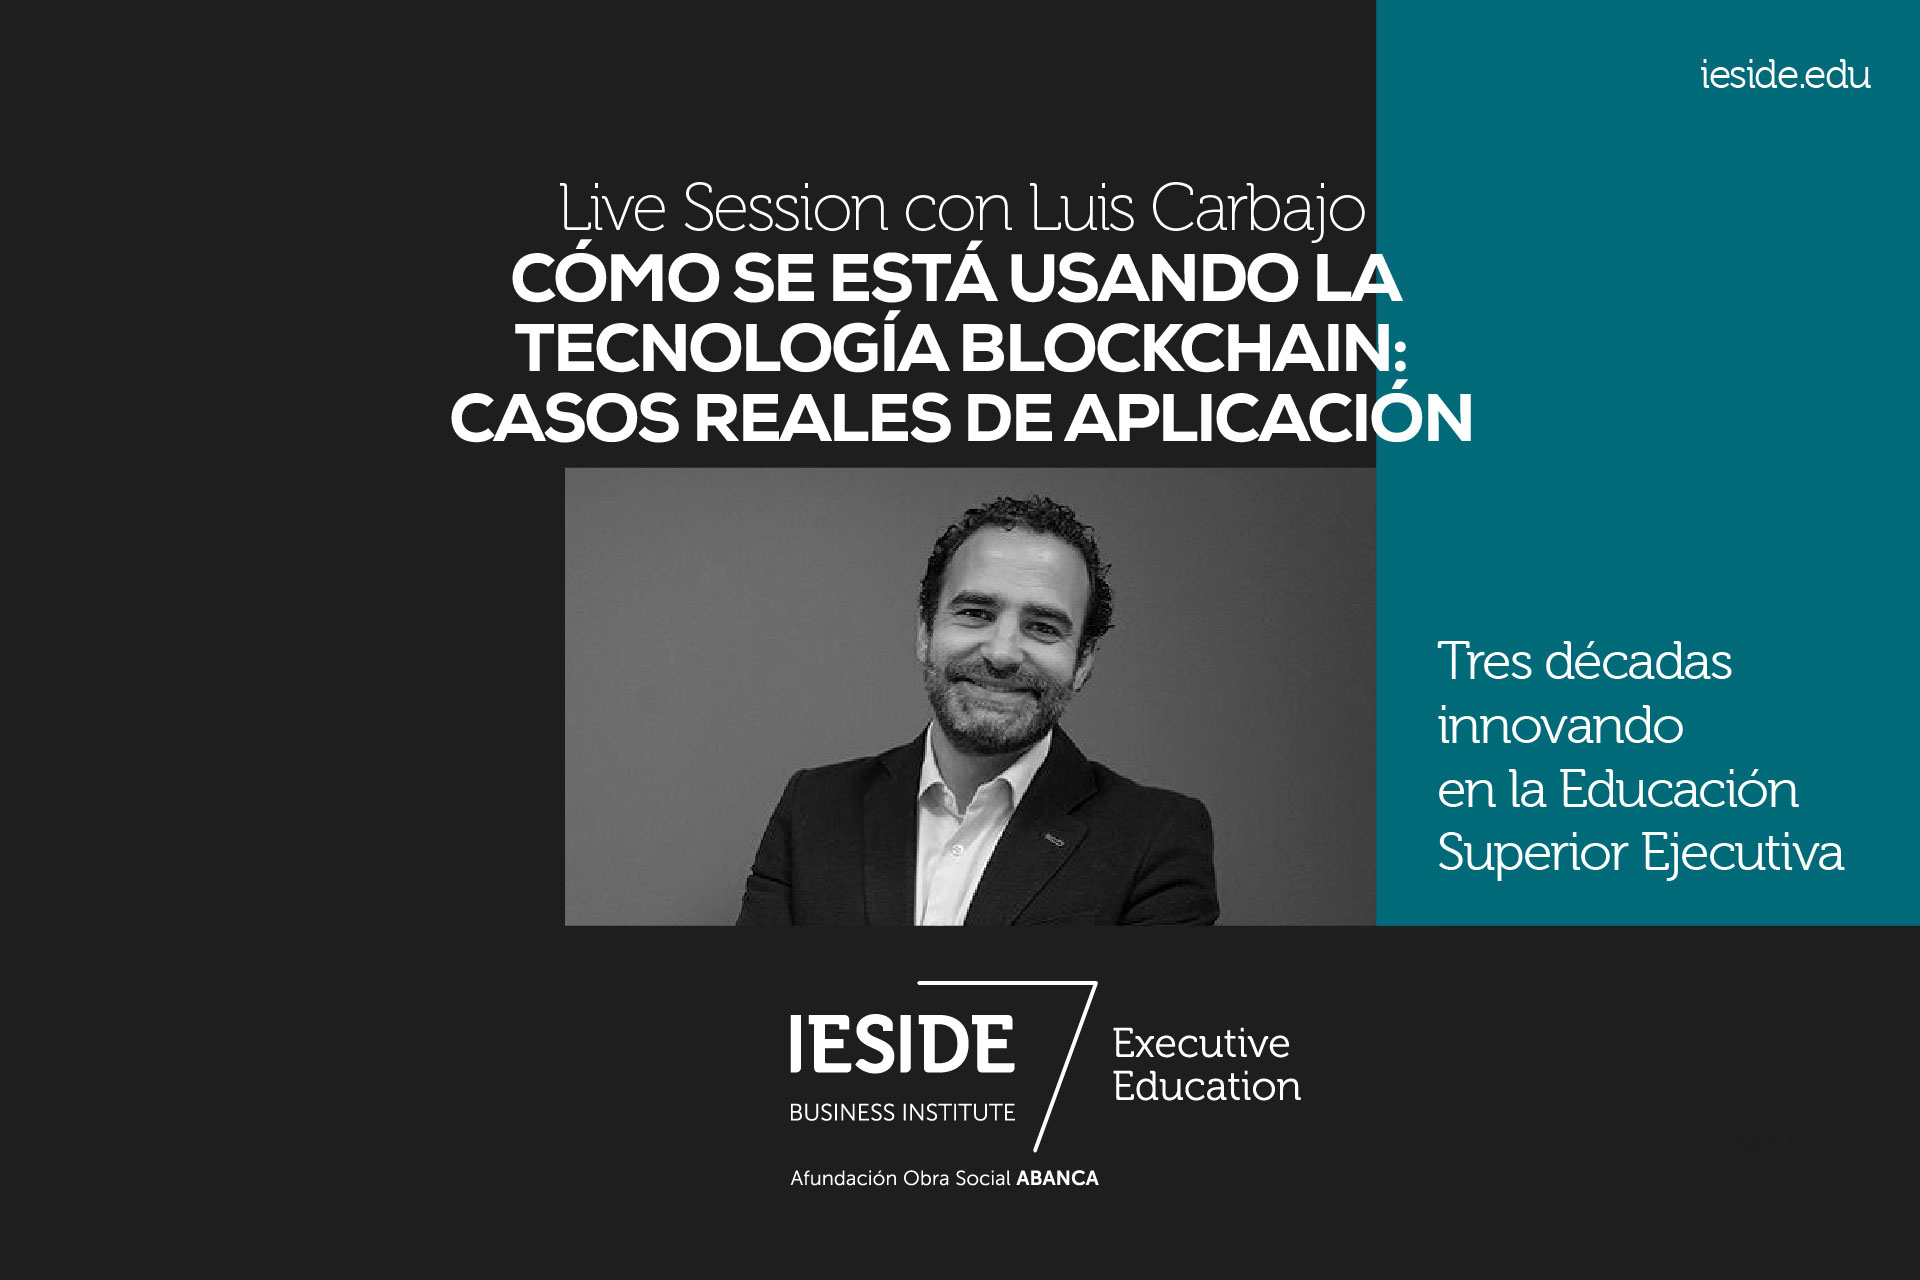 Luis Carbajo hablará sobre emprender blockchain y casos reales de aplicación una nueva live session de IESIDE